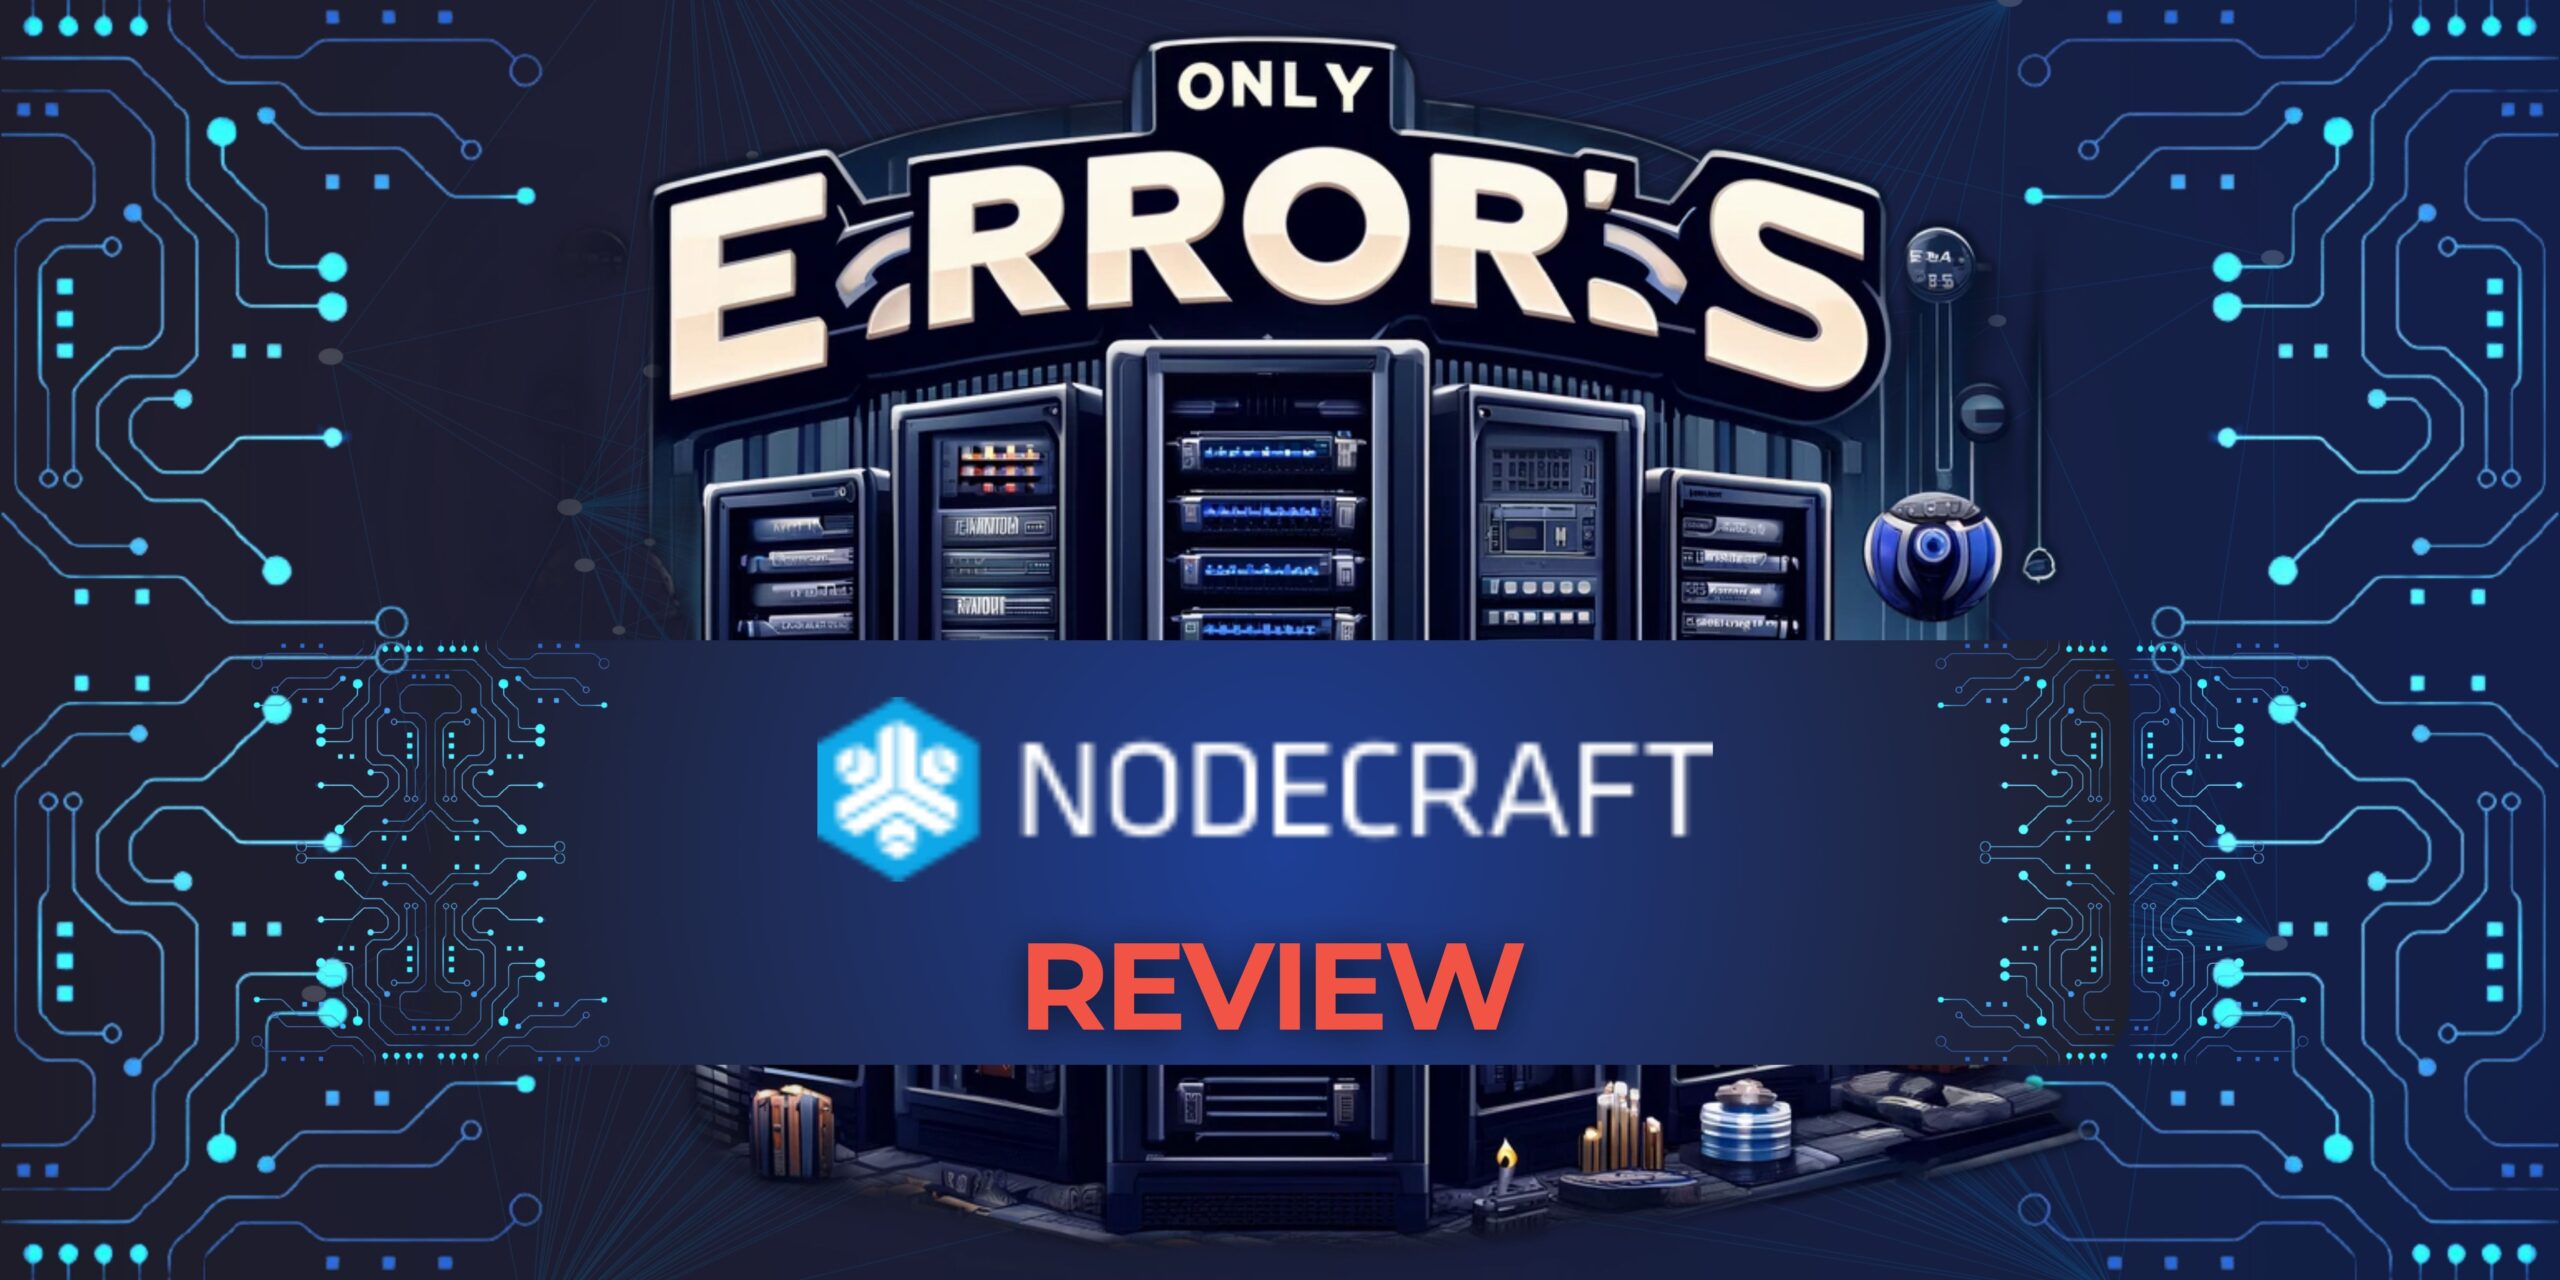 Nodecraft Review